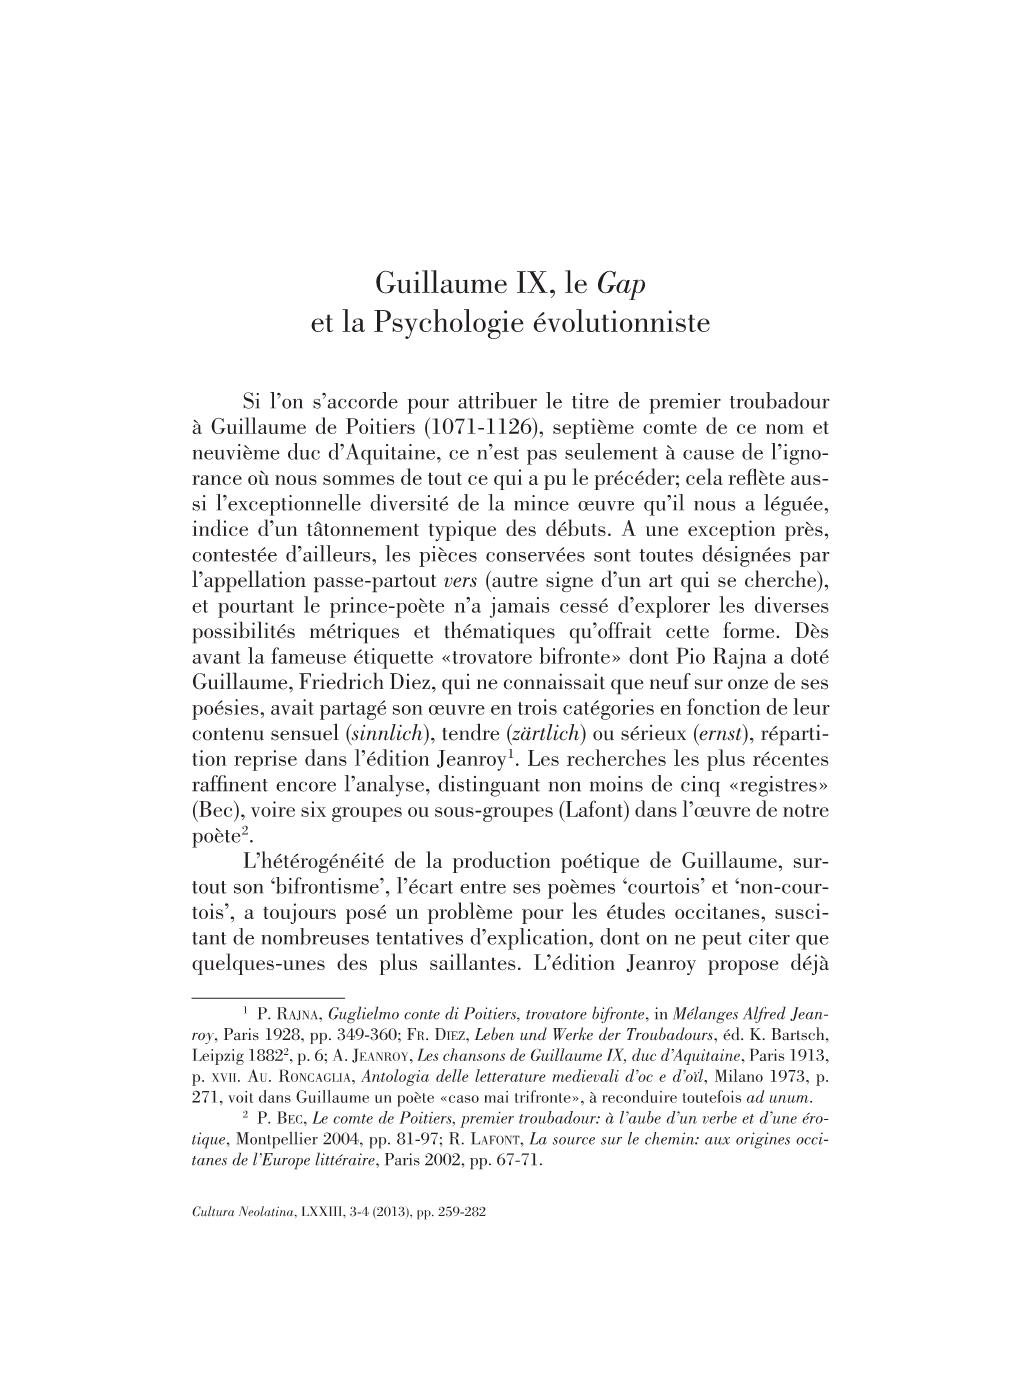 Guillaume IX, Le Gap Et La Psychologie Évolutionniste